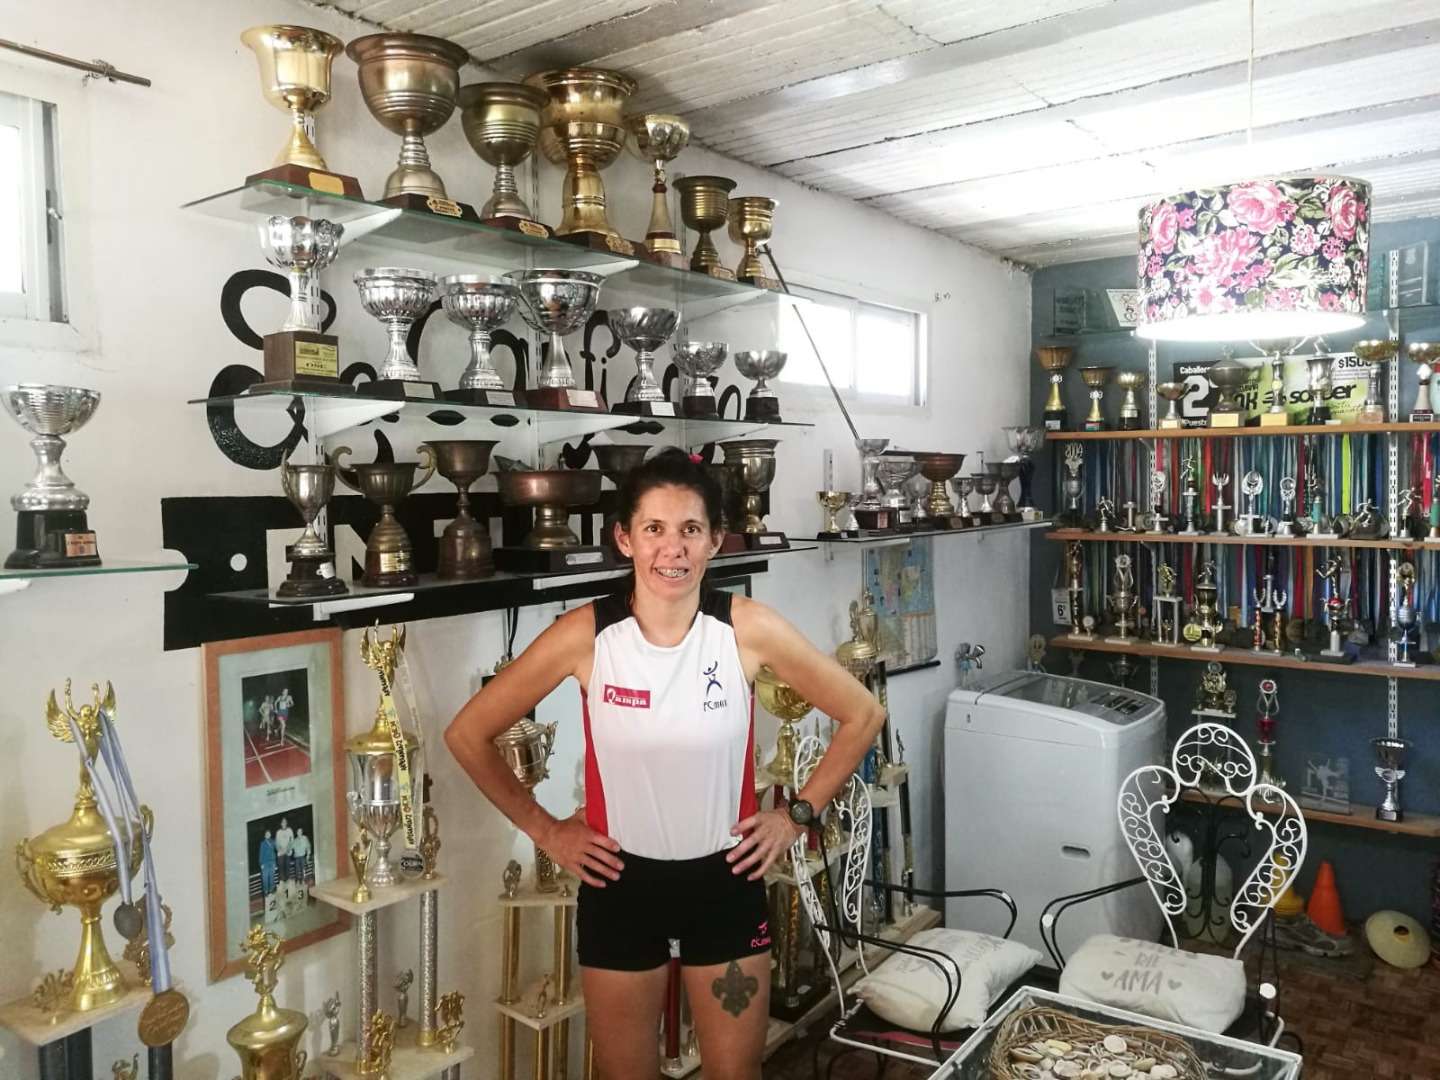 Atletismo: Es madre, tiene un complejo turístico y corre en la alta competencia: la historia de Lis Quinteros